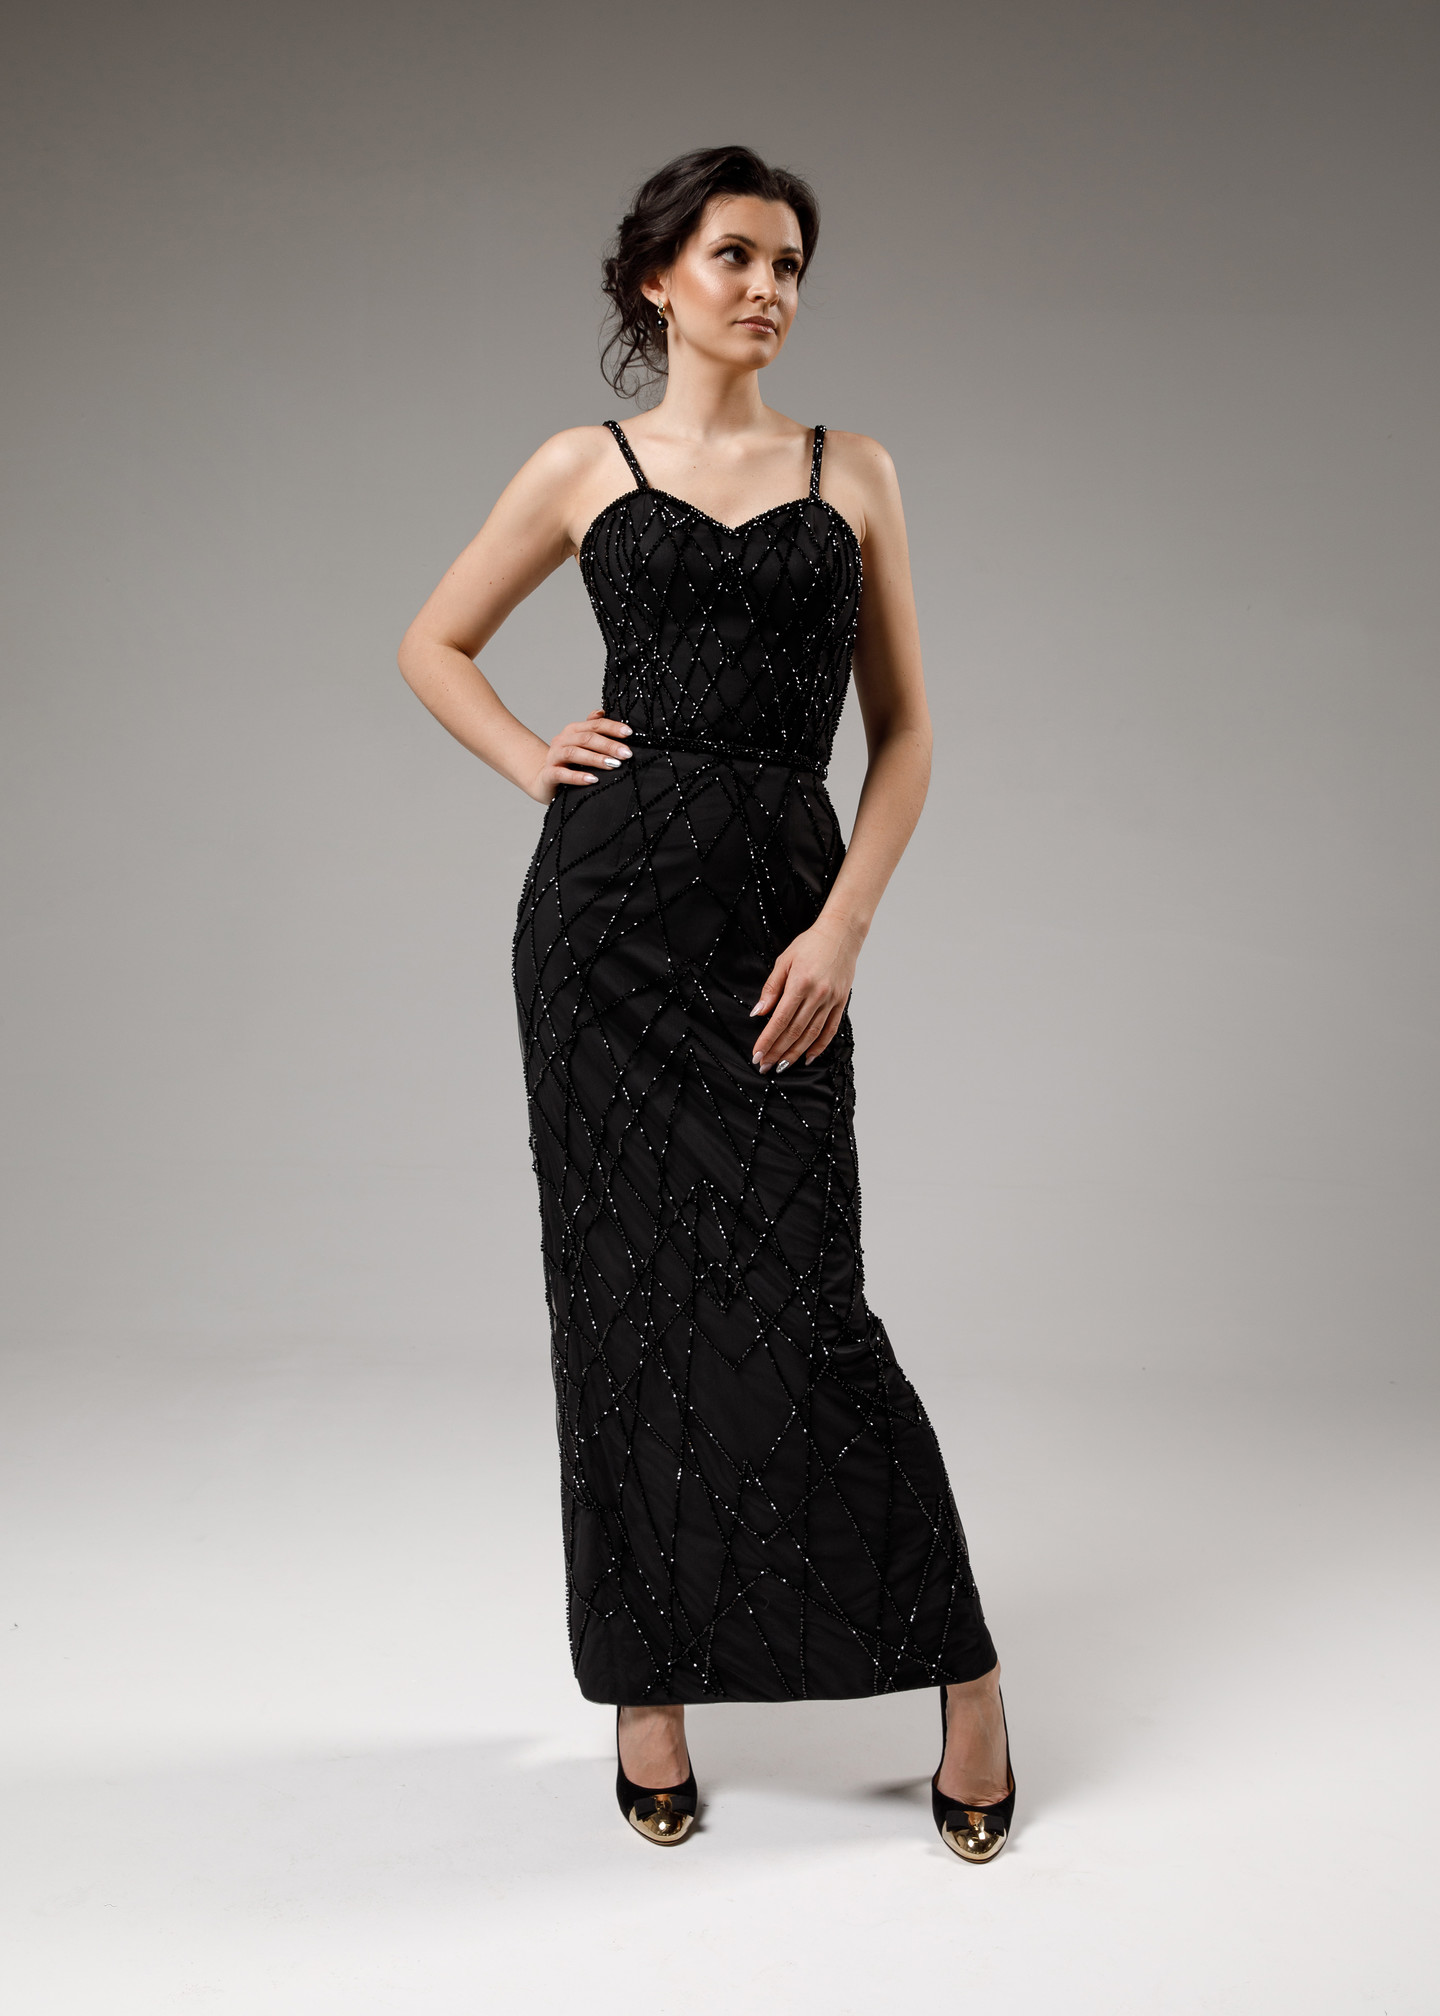 Платье Селестия, 2021, одежда, платье, вечернее, черный, вышивка